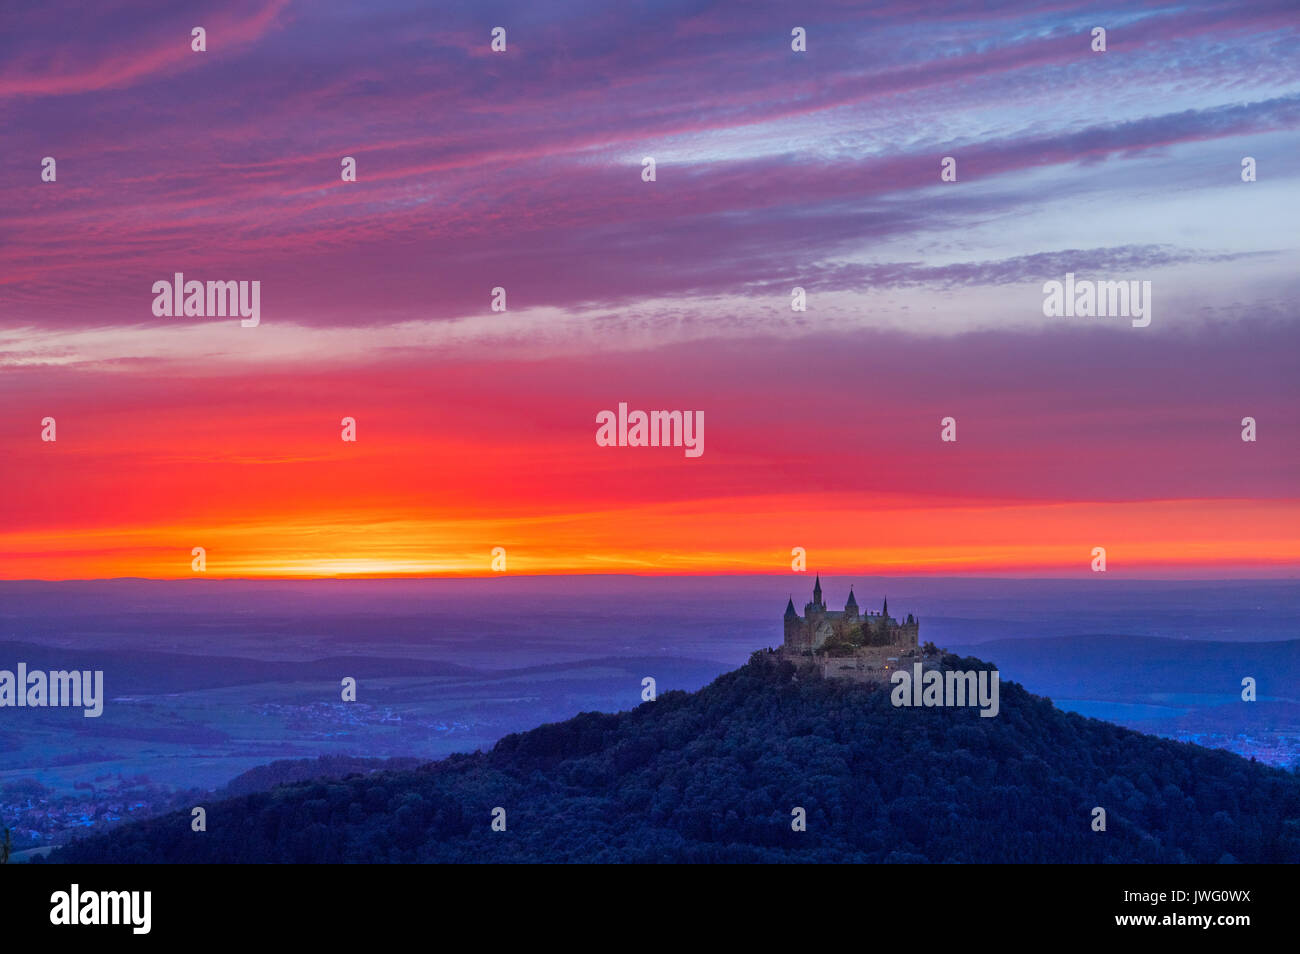 Abendstimmung mit Sonnenuntergang bei der Burg Hohenzollern, Schwäbische Alb, Baden-Württemberg, Deutschland, Europa Stock Photo